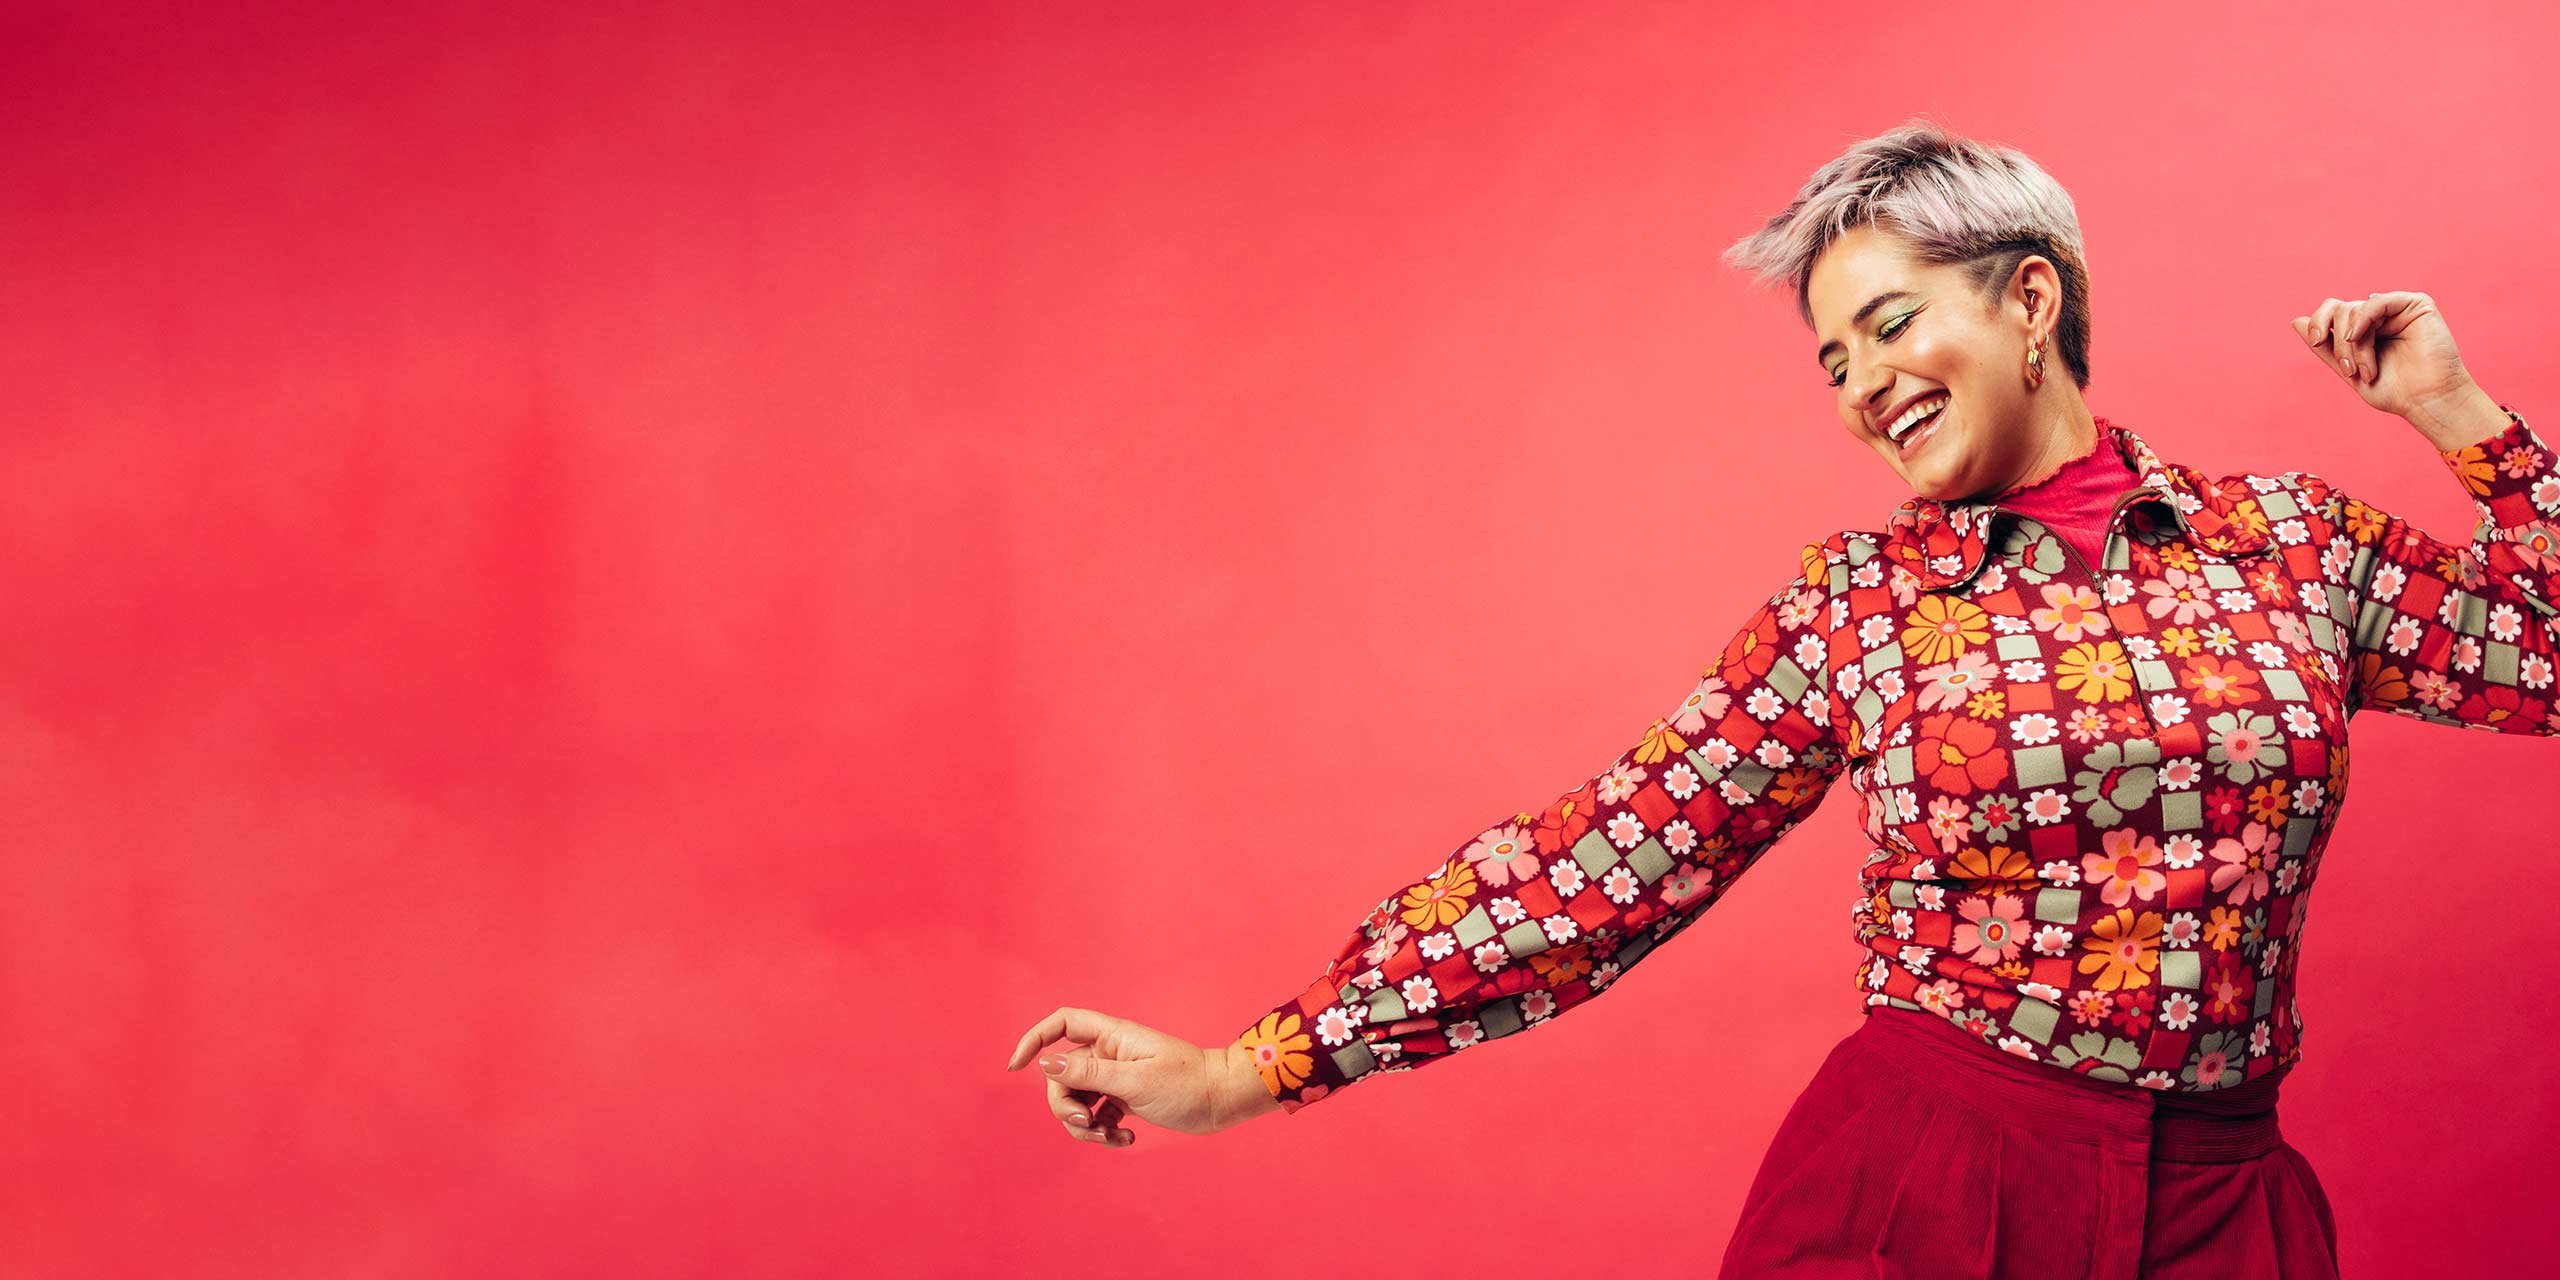 Farbenfrüh gekleidete Frau freut sich und tanzt vor einem roten Hintergrund